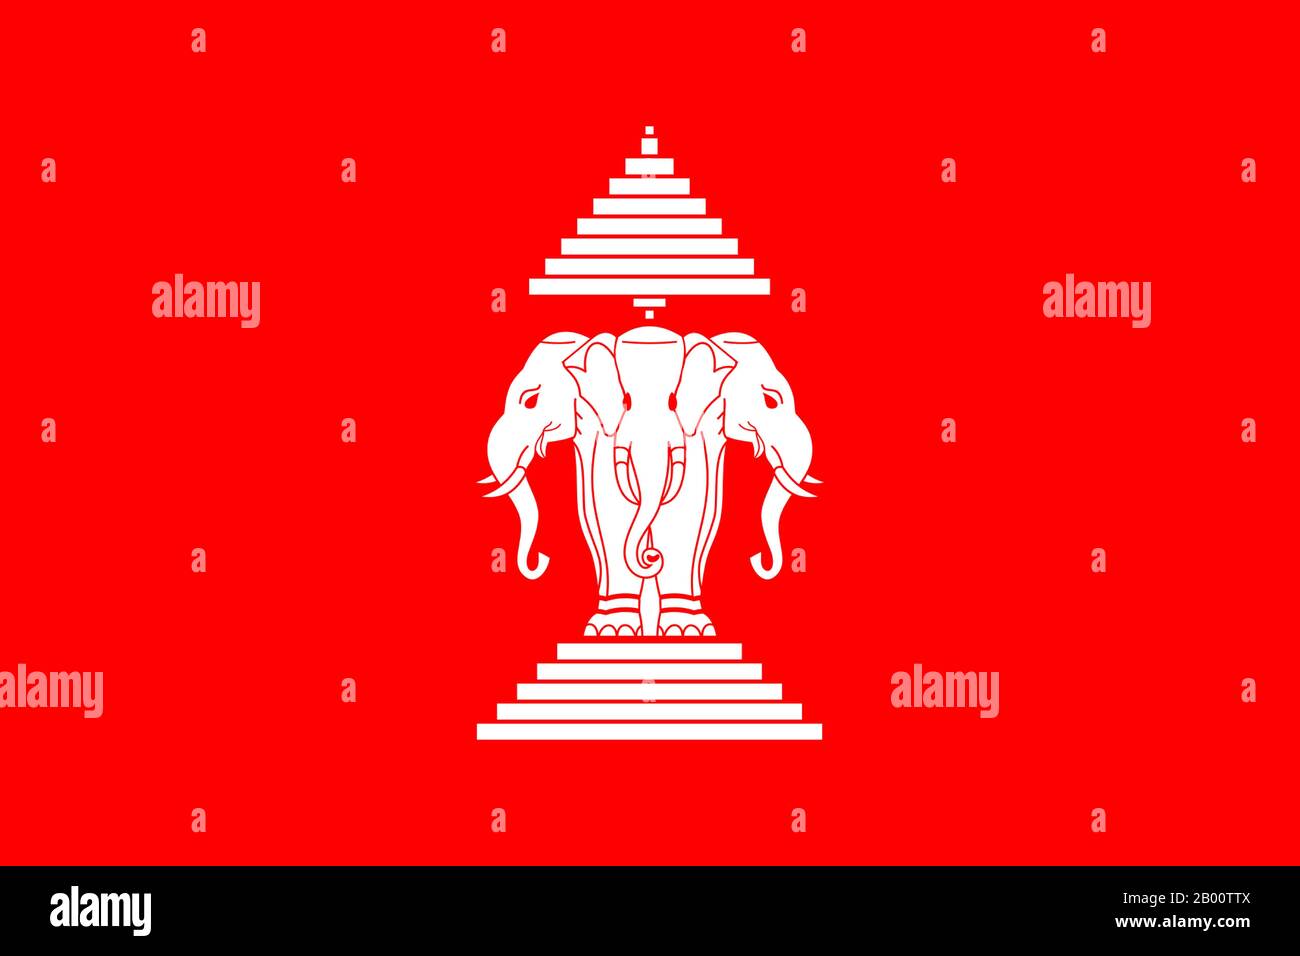 Laos : drapeau du Royaume du Laos (1952-1975). De 1952 jusqu'à la chute du gouvernement royal en 1975, le pays avait un drapeau rouge, avec un éléphant blanc à trois têtes (le dieu Erawan) au milieu. Au-dessus de l'éléphant se trouve un parapluie à neuf plis, tandis que l'éléphant lui-même se trouve sur un piédestal à cinq niveaux. L'éléphant blanc est un symbole royal commun en Asie du Sud-est, les trois têtes ont parlé des trois anciens royaumes de Vientiane, Luang Prabang, et Champasak qui ont constitué le pays. Le parapluie à neuf plis est également un symbole royal, originaire de Mt. Meru dans la cosmologie bouddhiste. Banque D'Images